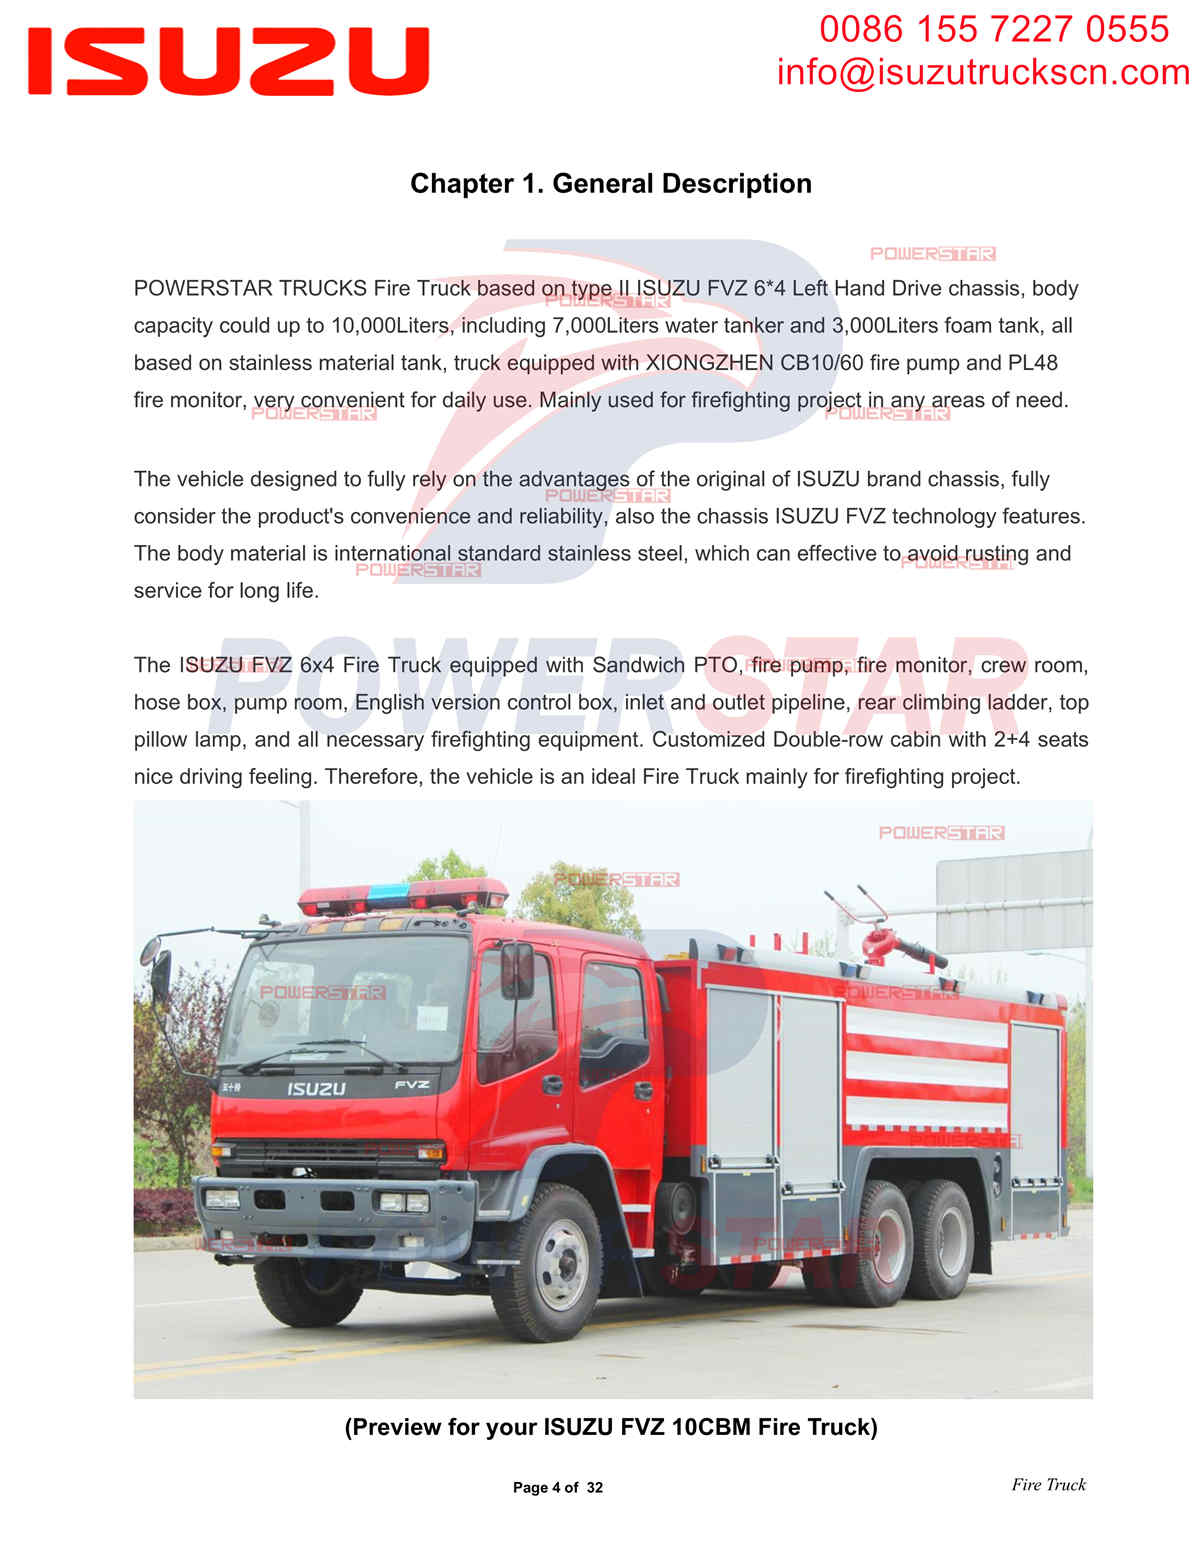 Экспорт пожарной машины POWERSTAR ISUZU FVZ в Африку